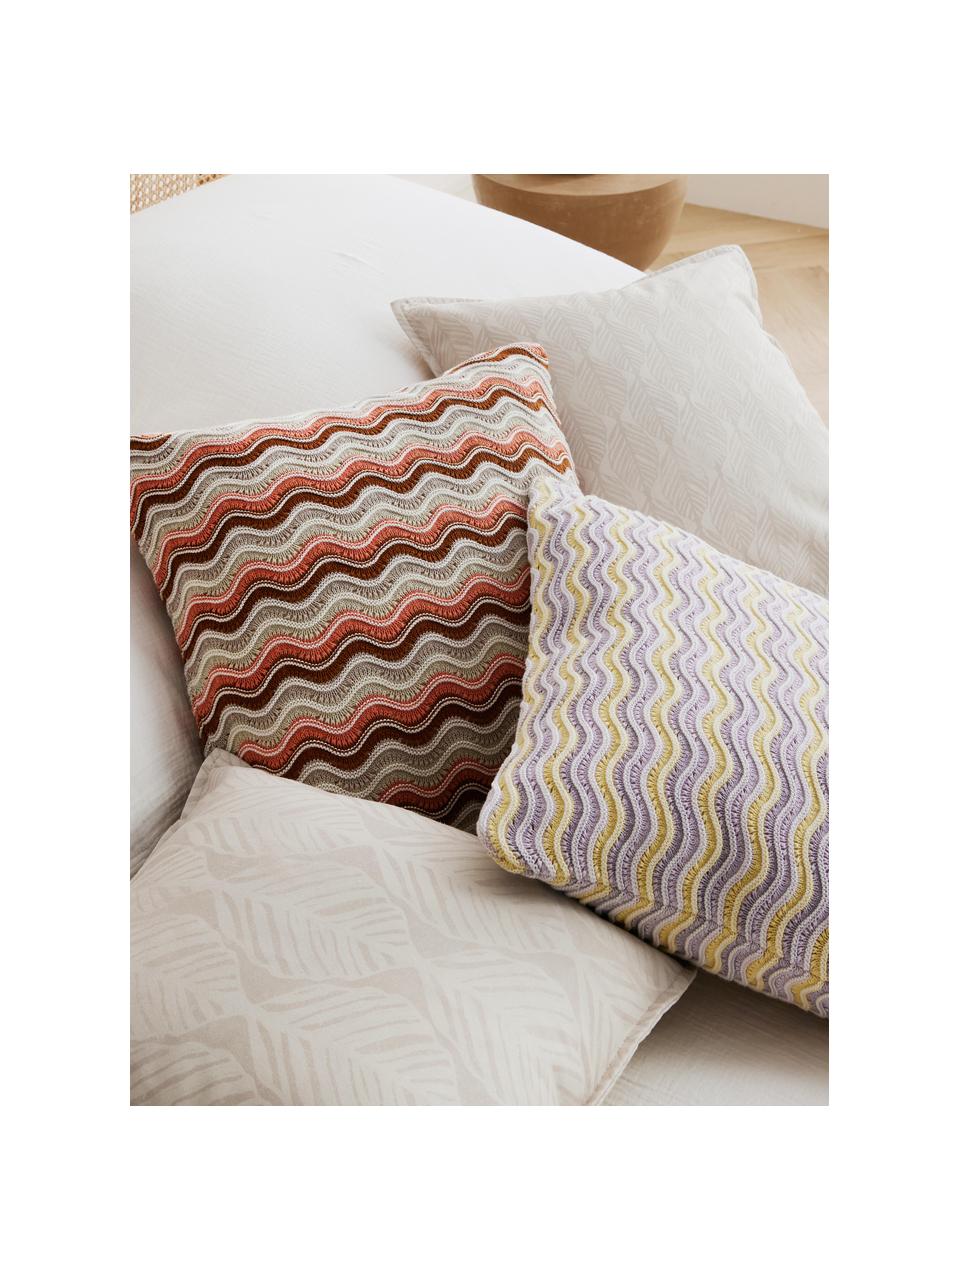 Kissenhüllen Armanda mit grafischem Muster, 2er-Set, 80 % Polyester, 20 % Baumwolle, Hellbeige, B 45 x L 45 cm